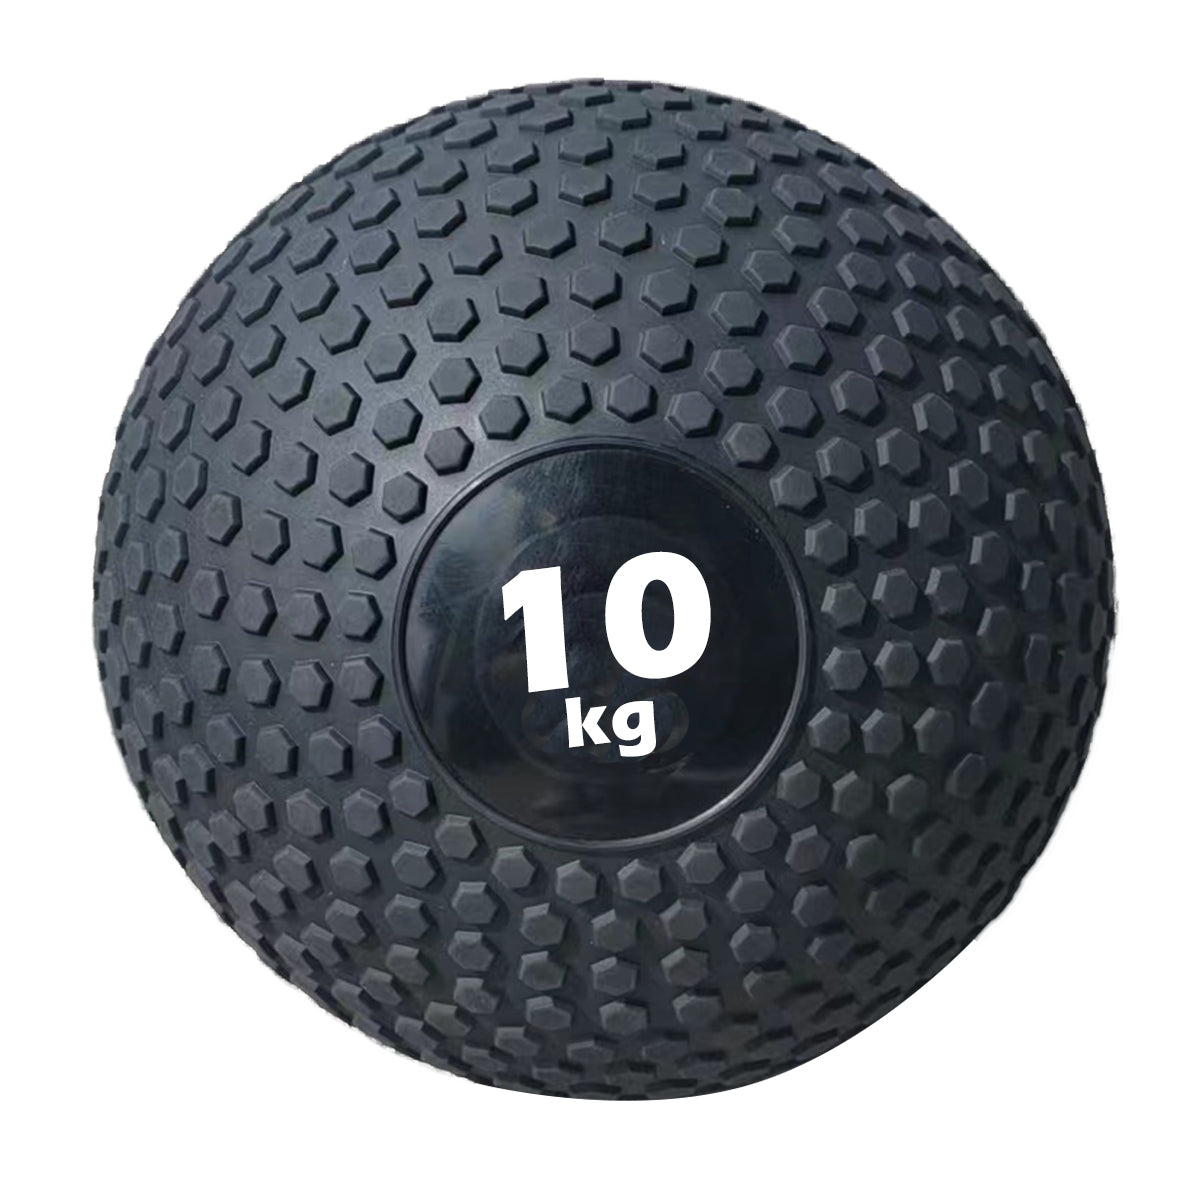 10kg slam ball